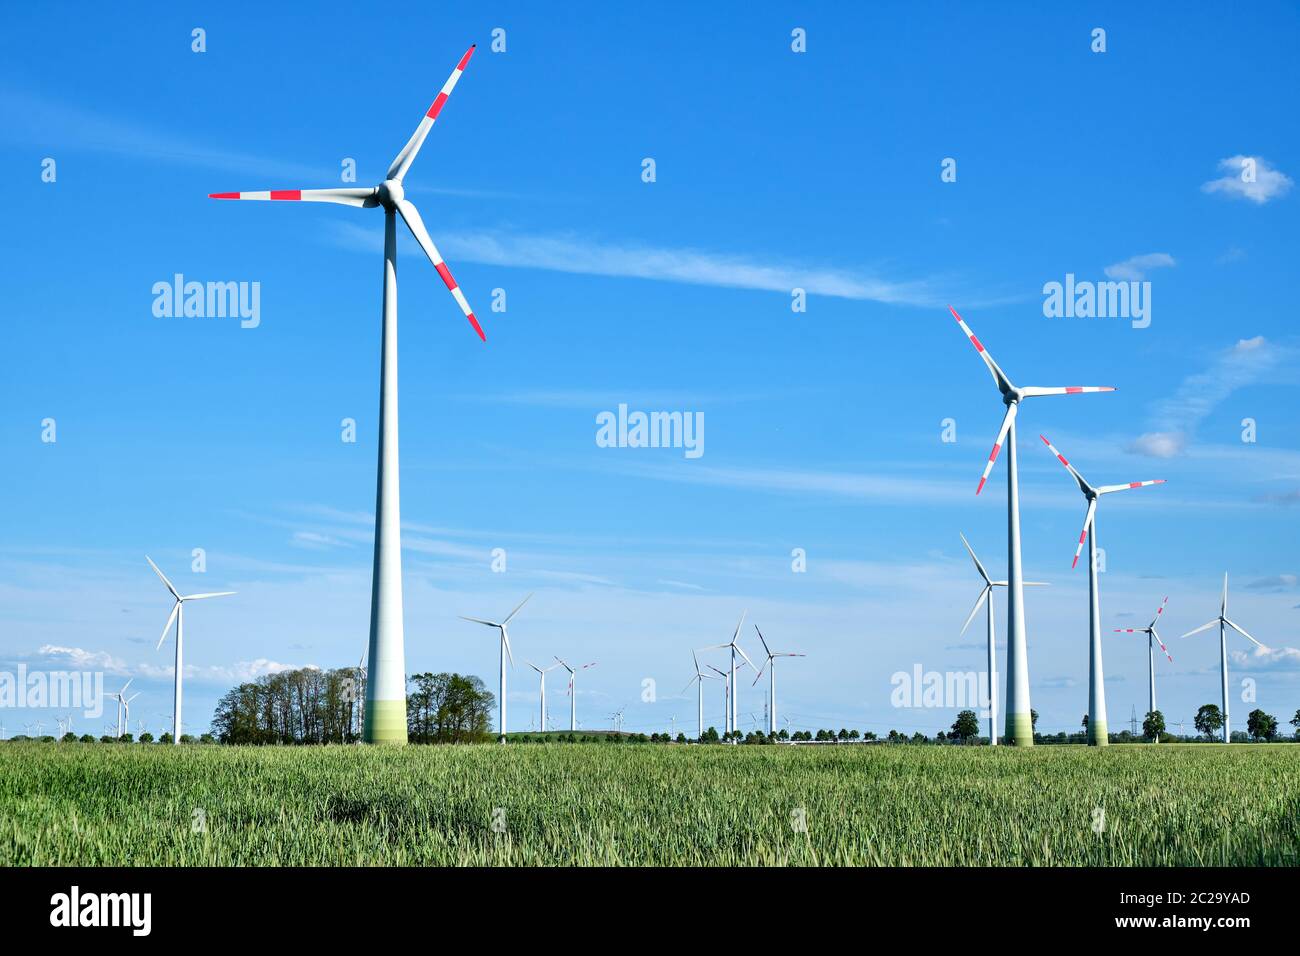 Modern wind energy generators in a cornfield seen in Germany Stock Photo